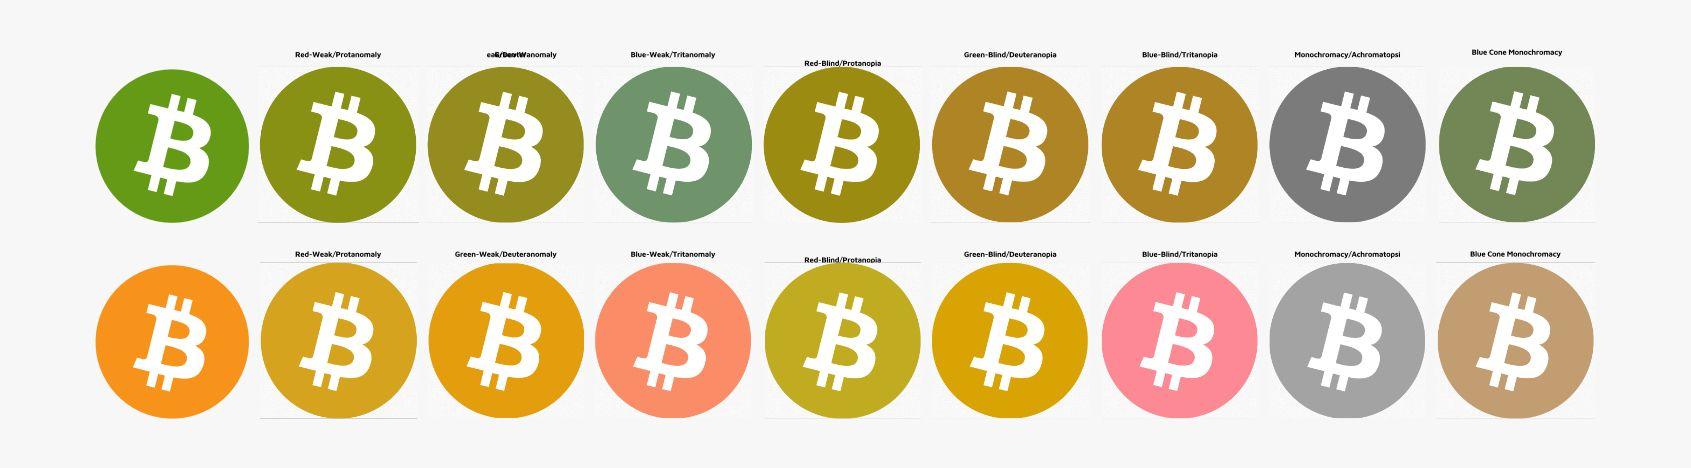 Bitcoin Cash Logo - bitcoin cash logo & branding Bitcoin Forum